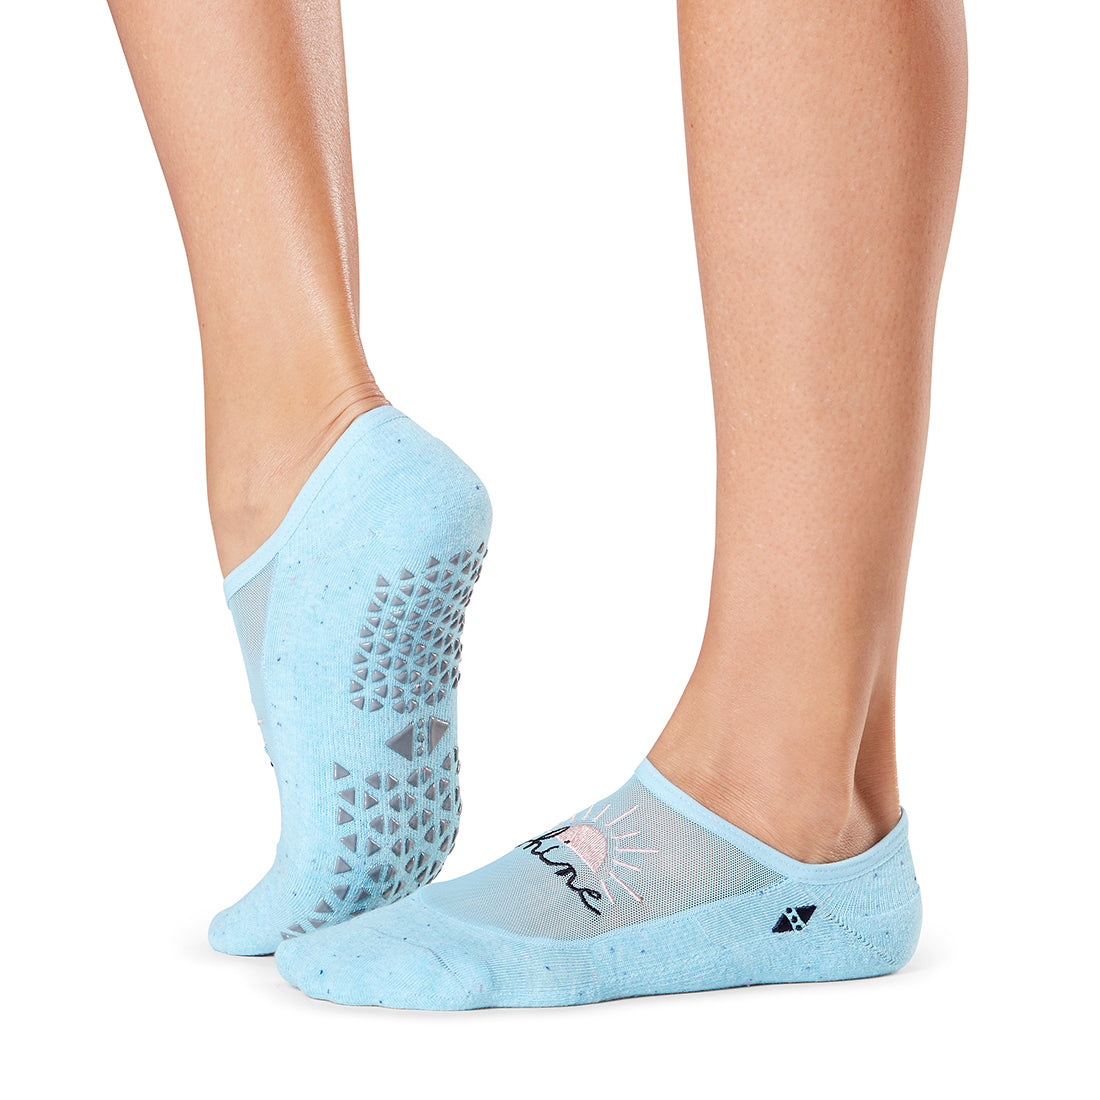 Tavi Maddie Barre Grip Socks at YogaOutlet.com –